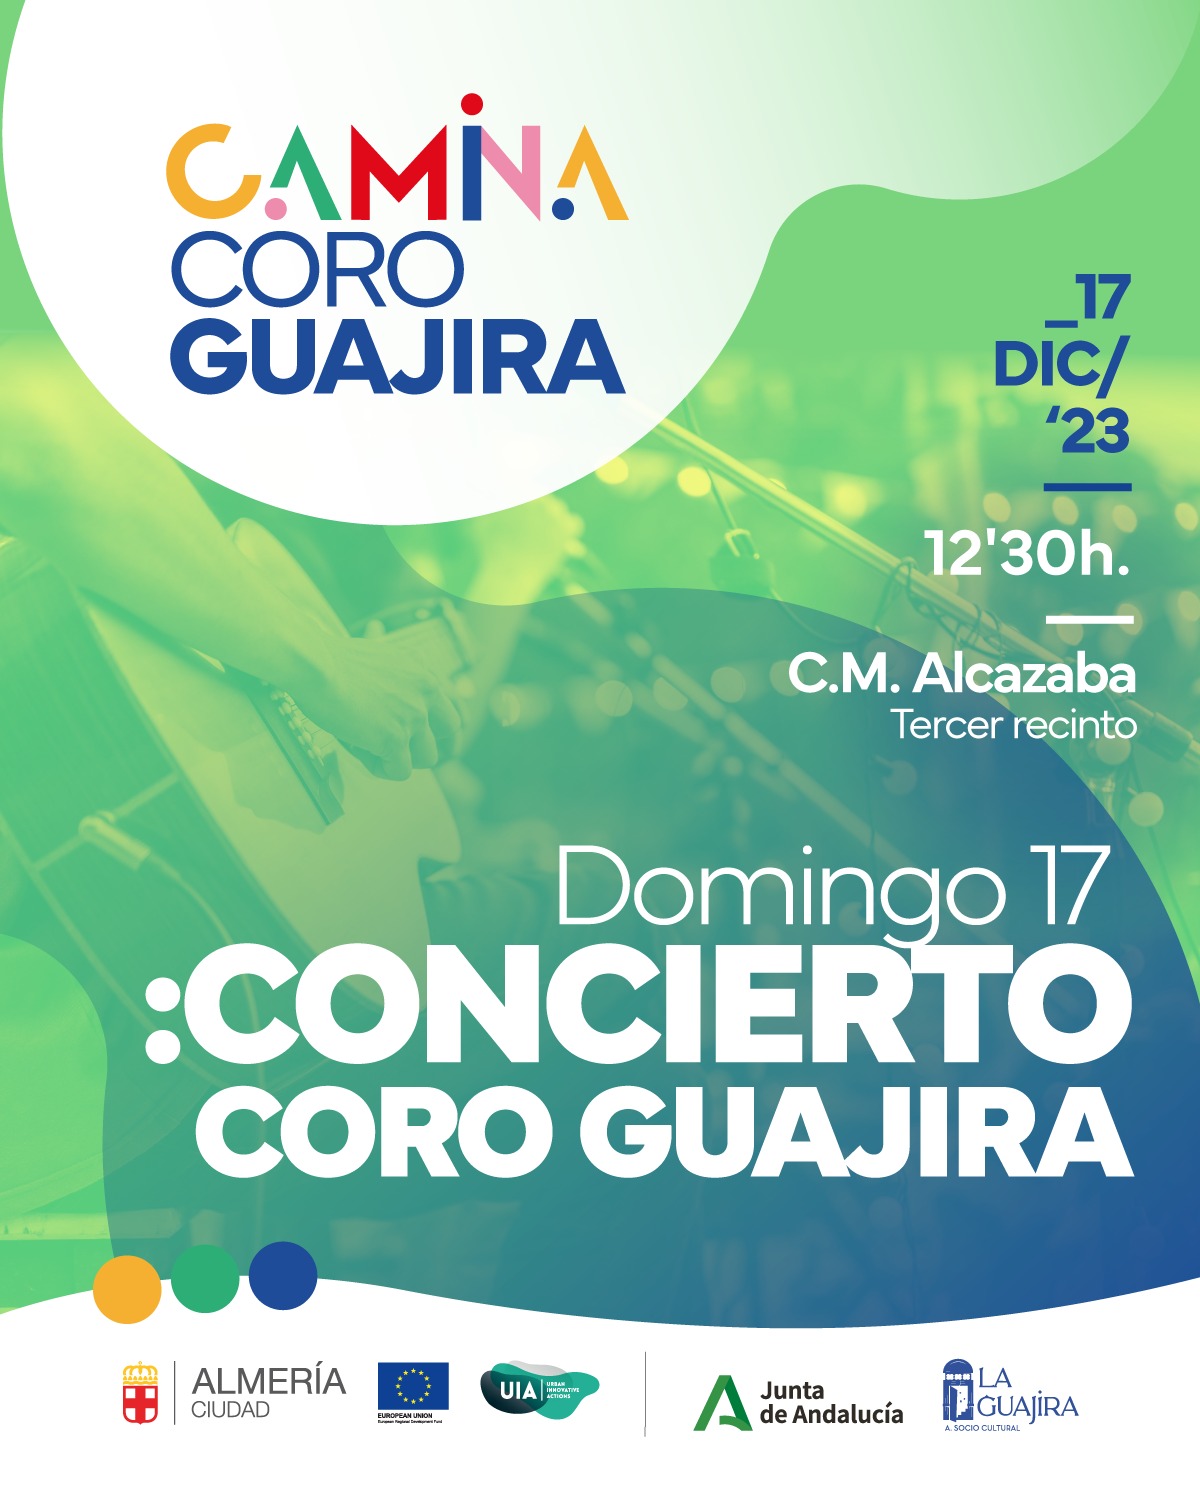 Concierto Coro Guajira